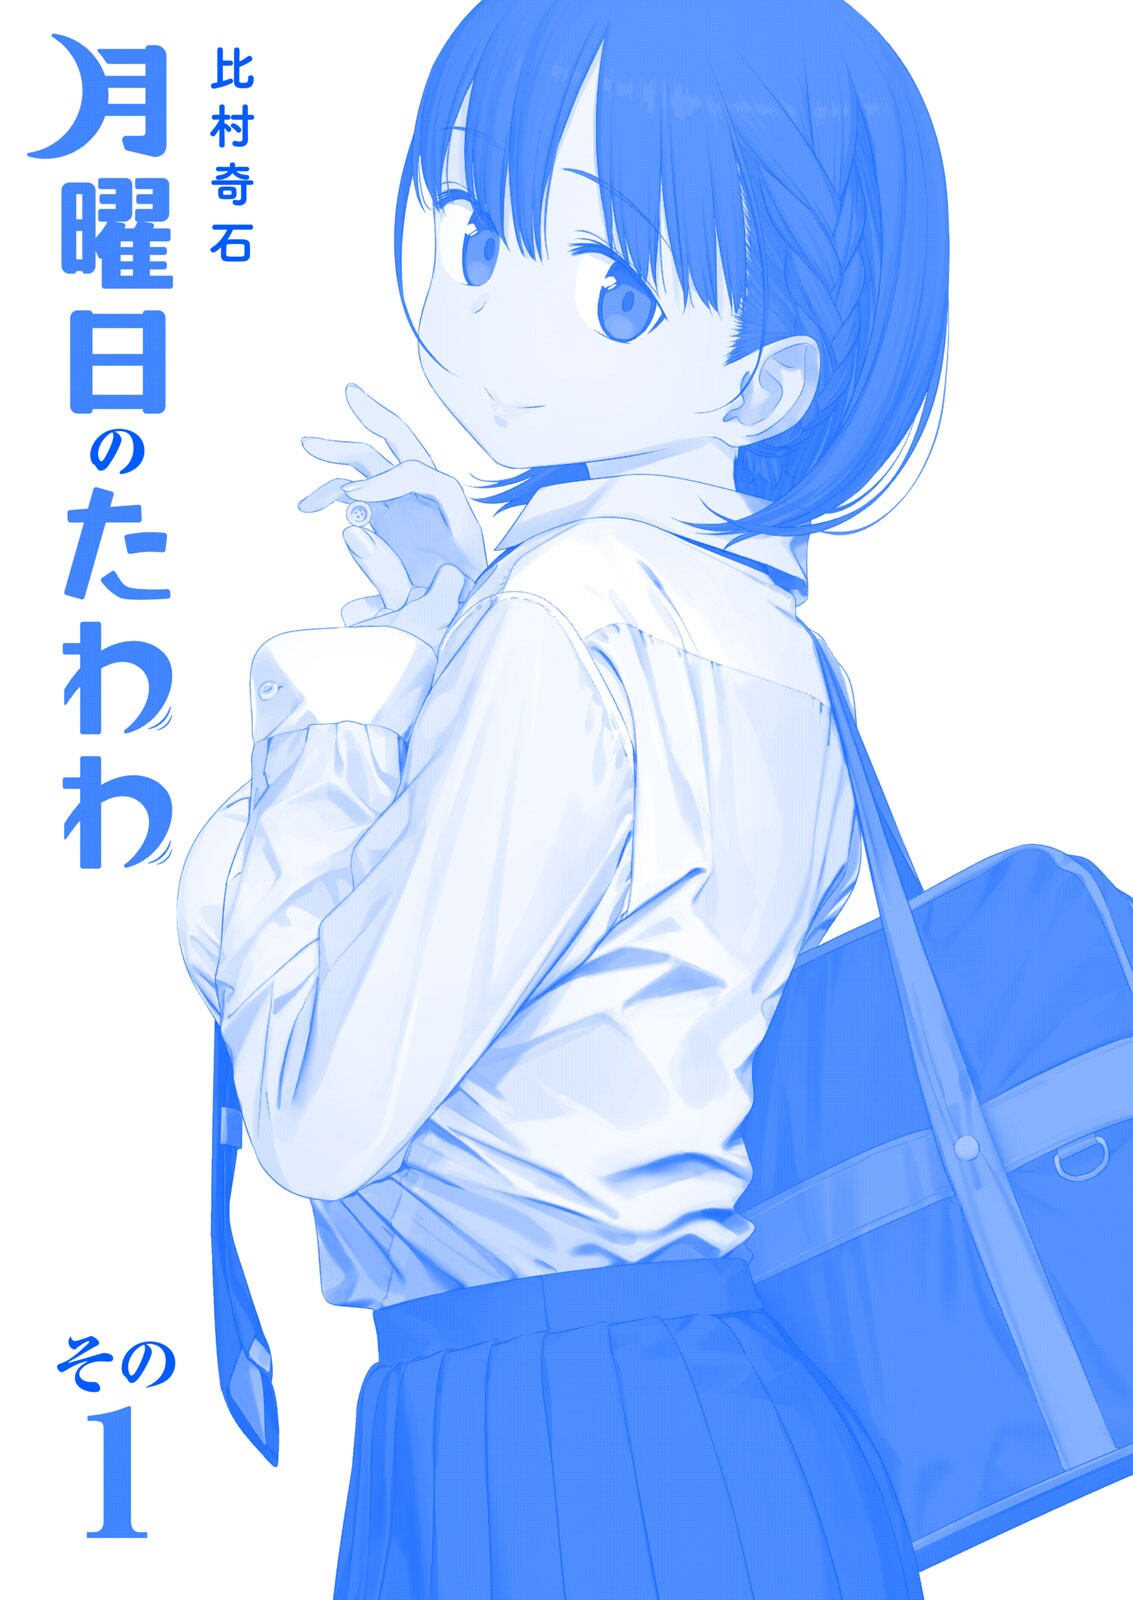 Read Getsuyoubi No Tawawa (Twitter Webcomic) (Fan Colored) Vol.2 Chapter 5:  Part Ii: Manga on Mangakakalot